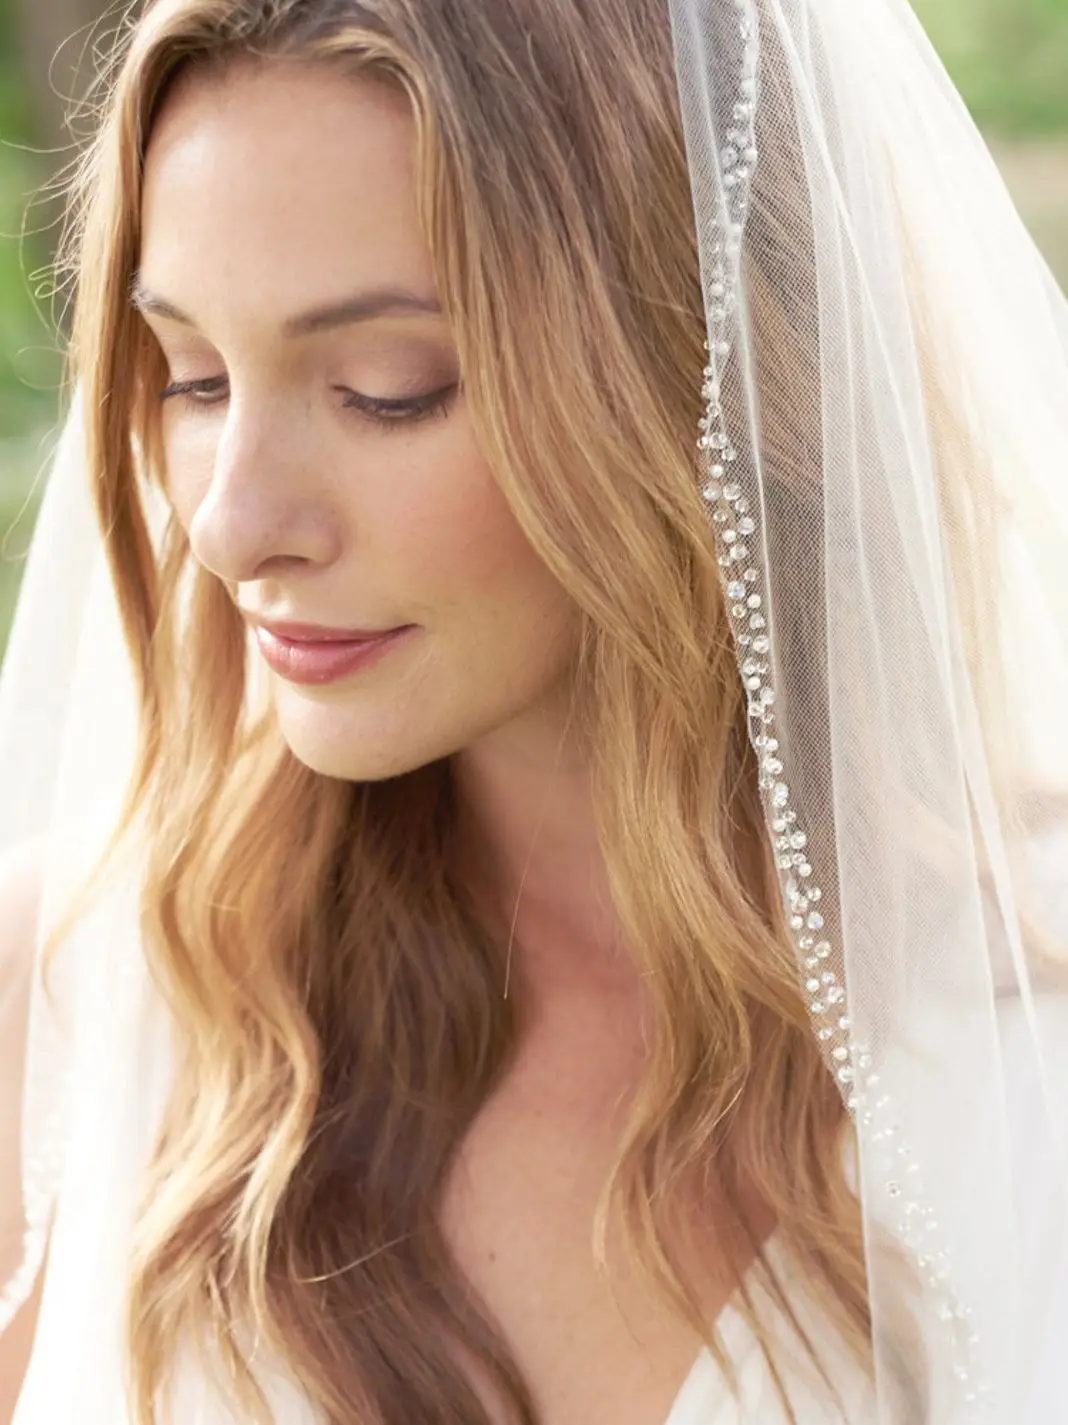 YouLaPan V128 Bridal Veils Wedding Crystal Organza Beaded Wedding Veil Rhinestone Soft Single Tier Bridal Veil with Crystal Edge